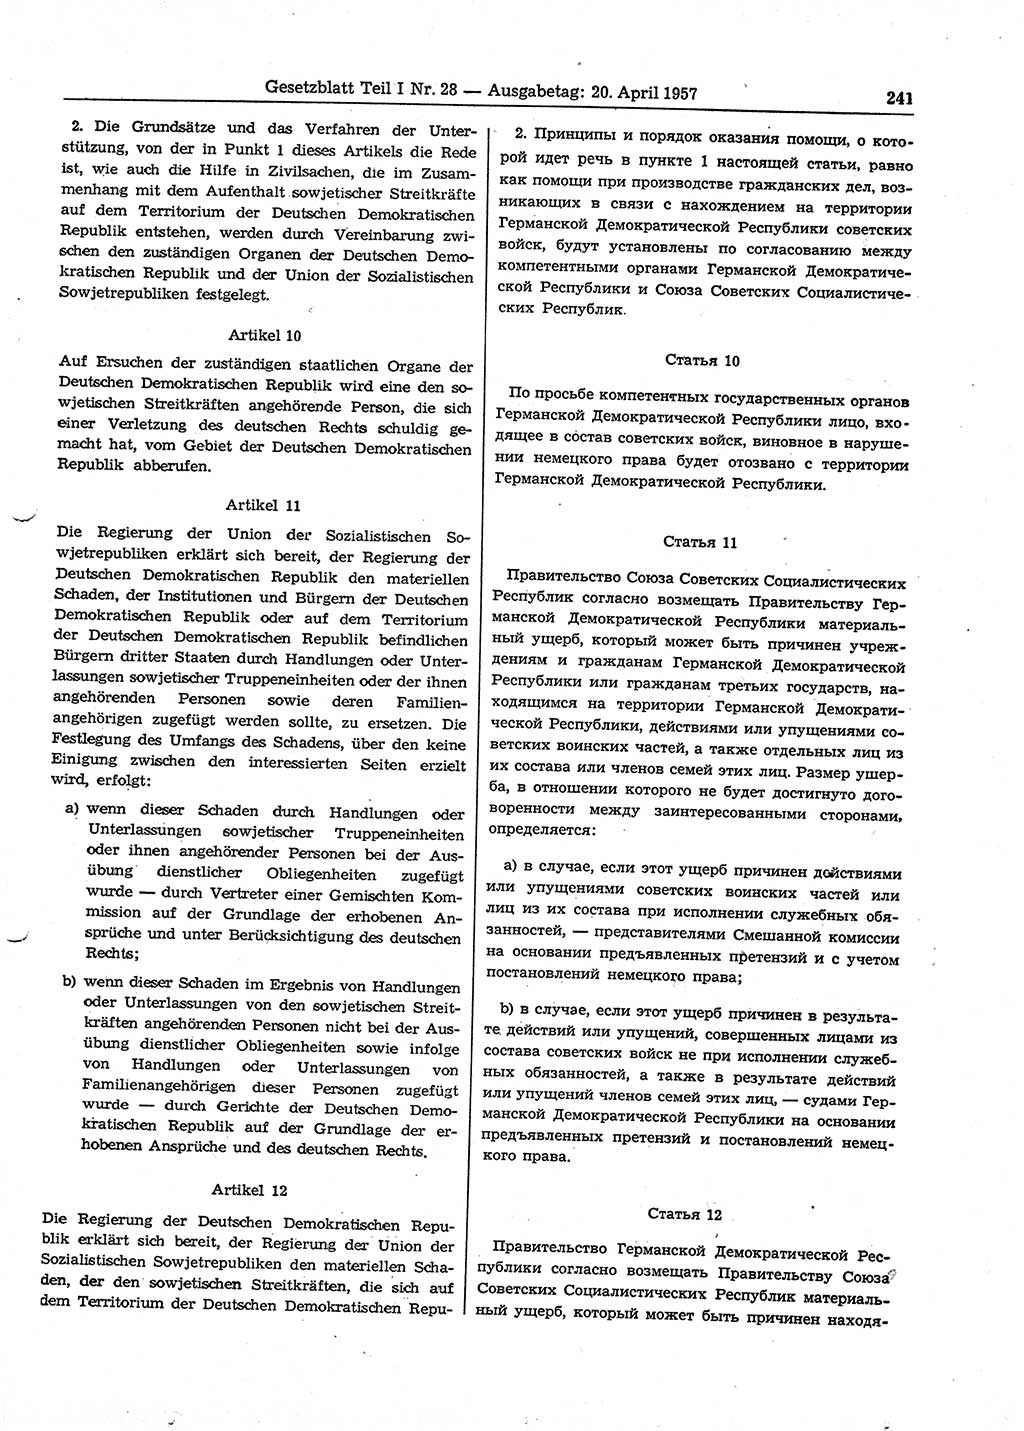 Gesetzblatt (GBl.) der Deutschen Demokratischen Republik (DDR) Teil Ⅰ 1957, Seite 241 (GBl. DDR Ⅰ 1957, S. 241)